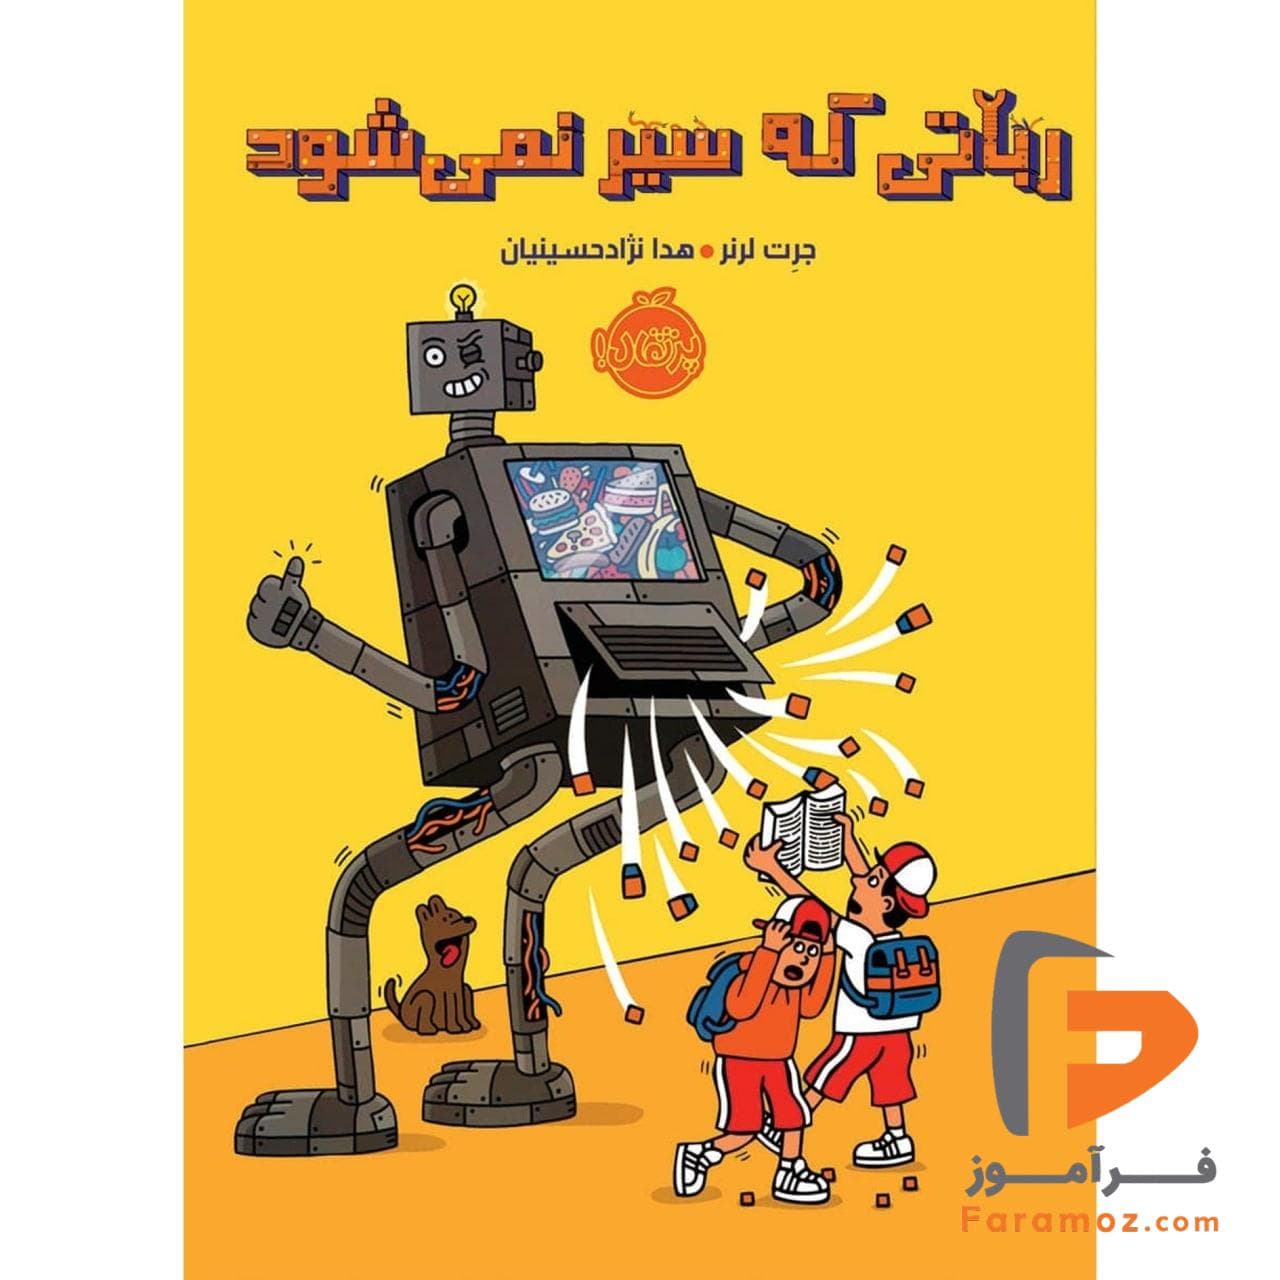 رباتی که سیر نمی شود هدا نژاد حسینیان